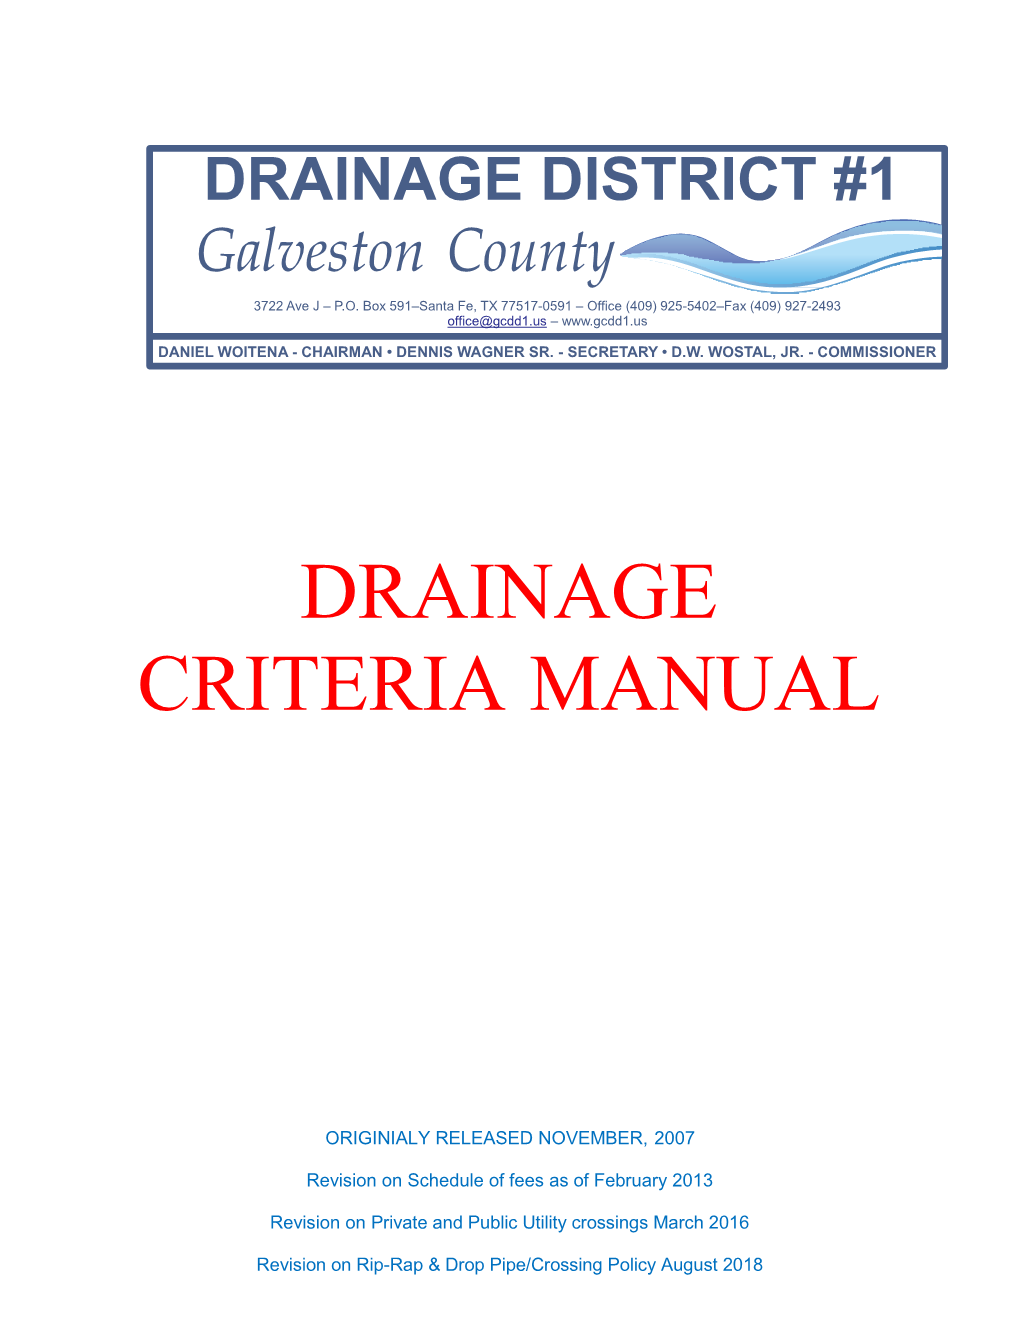 Drainage Criteria Manual